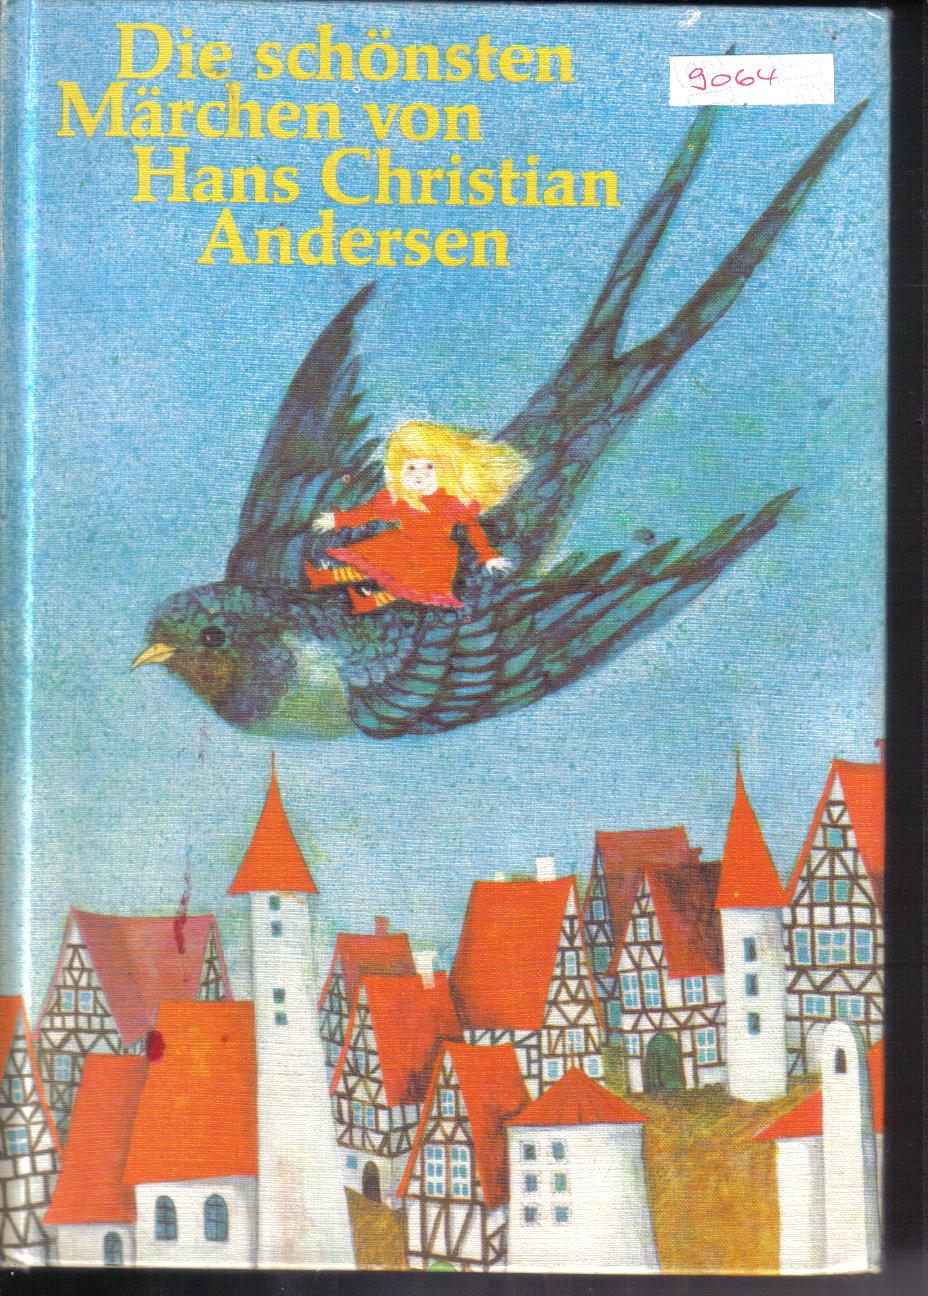 Die schoensten Maerchen von Hans Christian Andersen